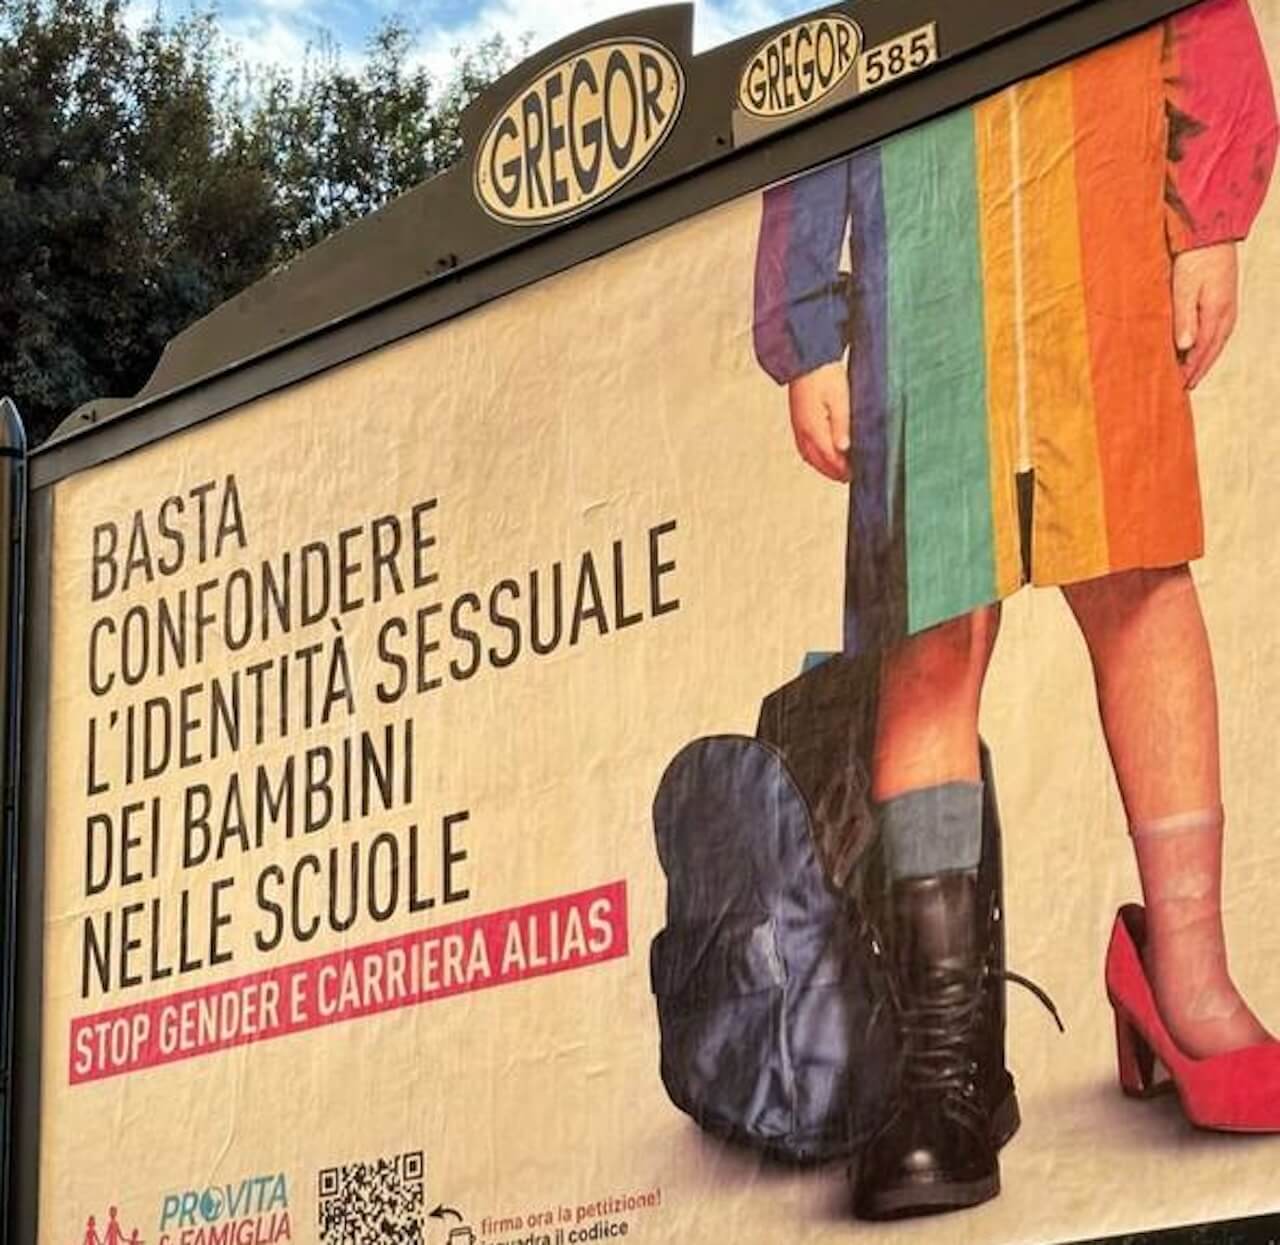 Pro Vita, nuovi aberranti manifesti contro la carriera alias a Roma: "Basta confondere l'identità sessuale dei bambini" - Pro Vita vs. Carriera Alias - Gay.it